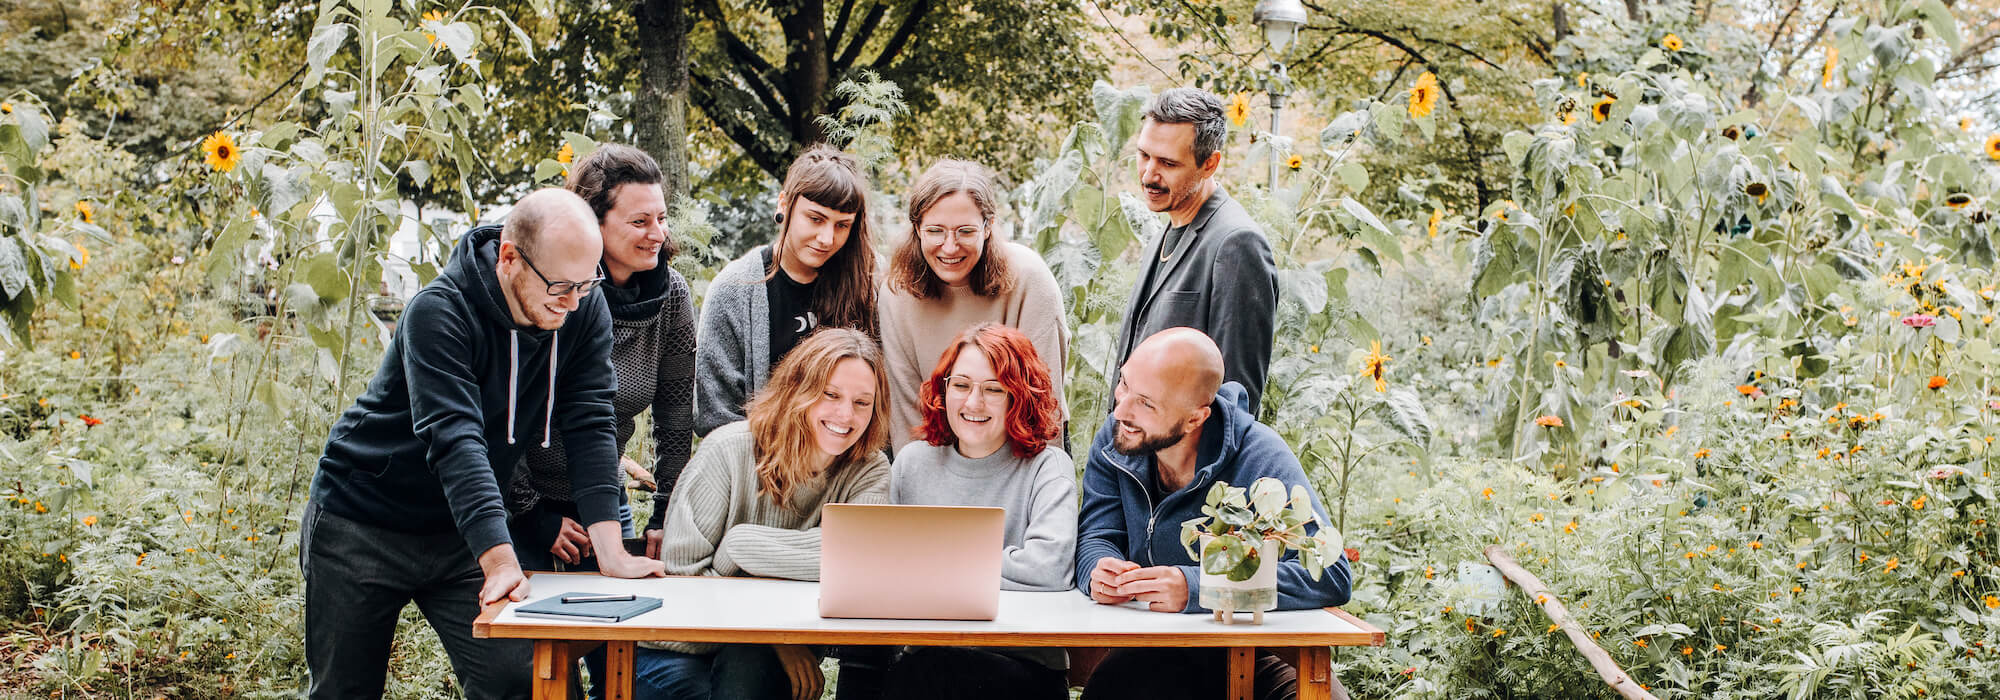 Ein Teambild eurer Lieblings-NGO-Agentur. Acht Personen sitzen und stehen mitten im Grünen um einen Schreibtisch mit einem laptop und einer netten Glückspflanze darauf. Alle schauen in den Laptop und lächeln.